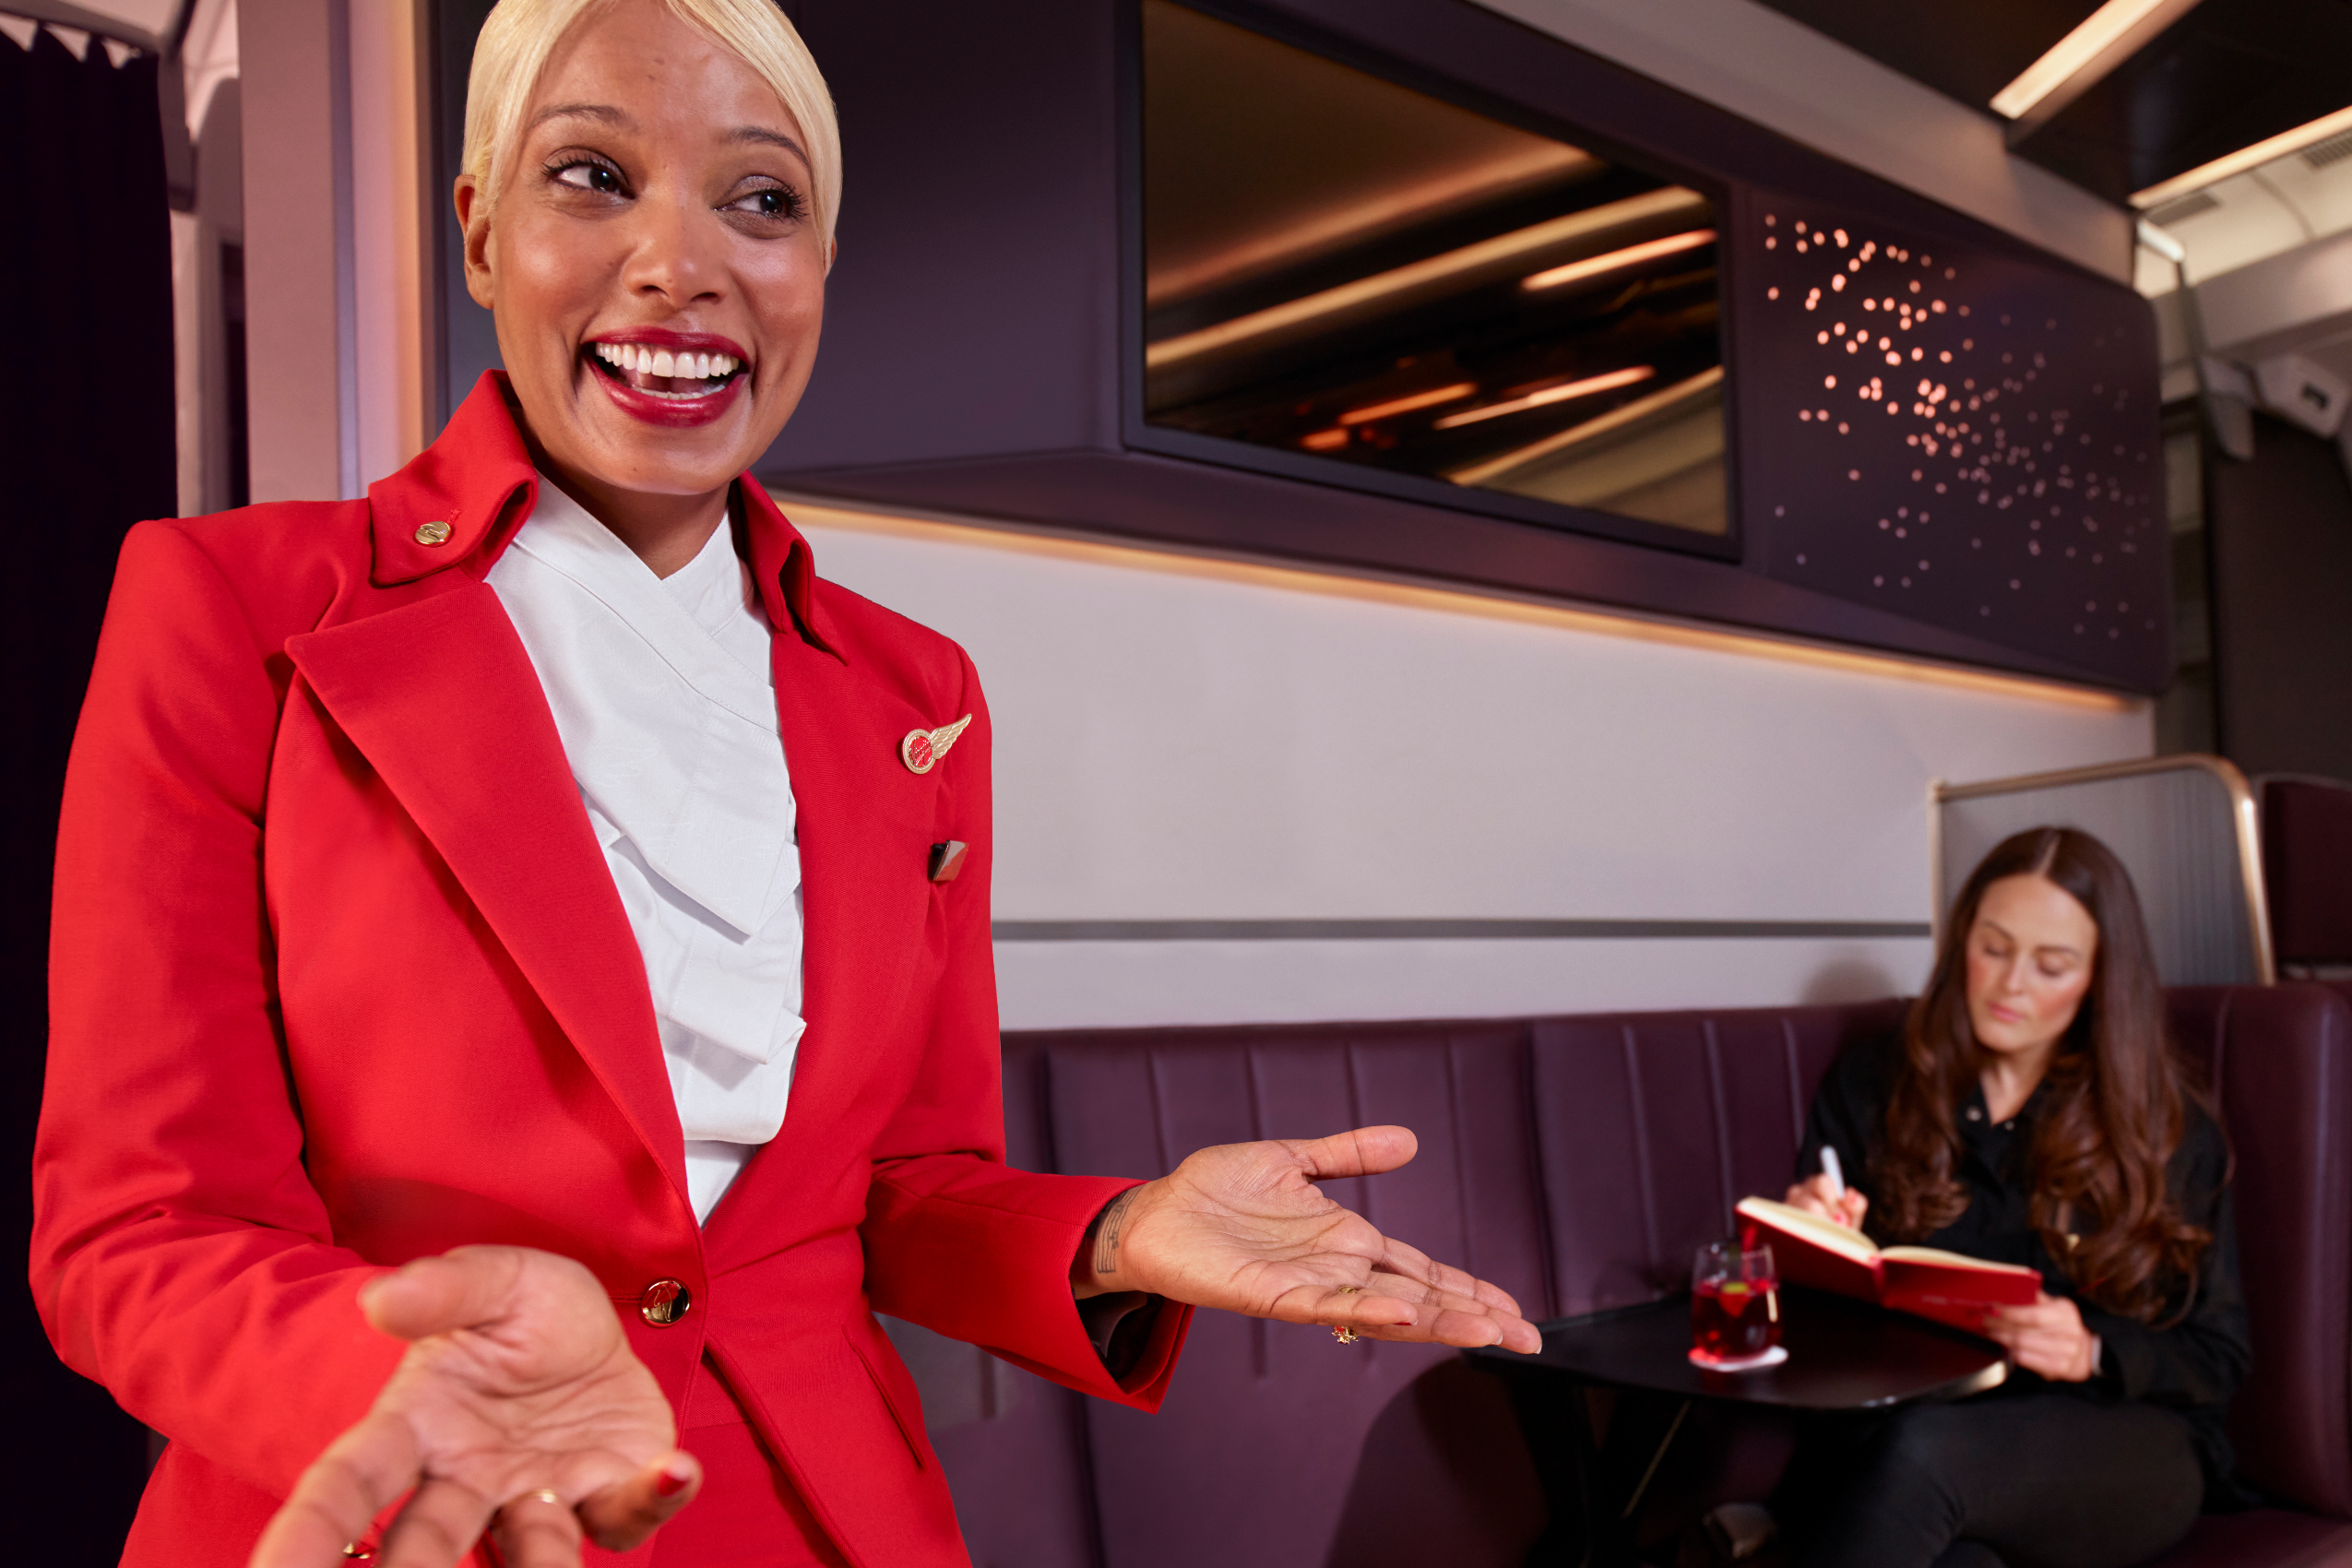 Smiling flight attendant of Virgin Atlantic